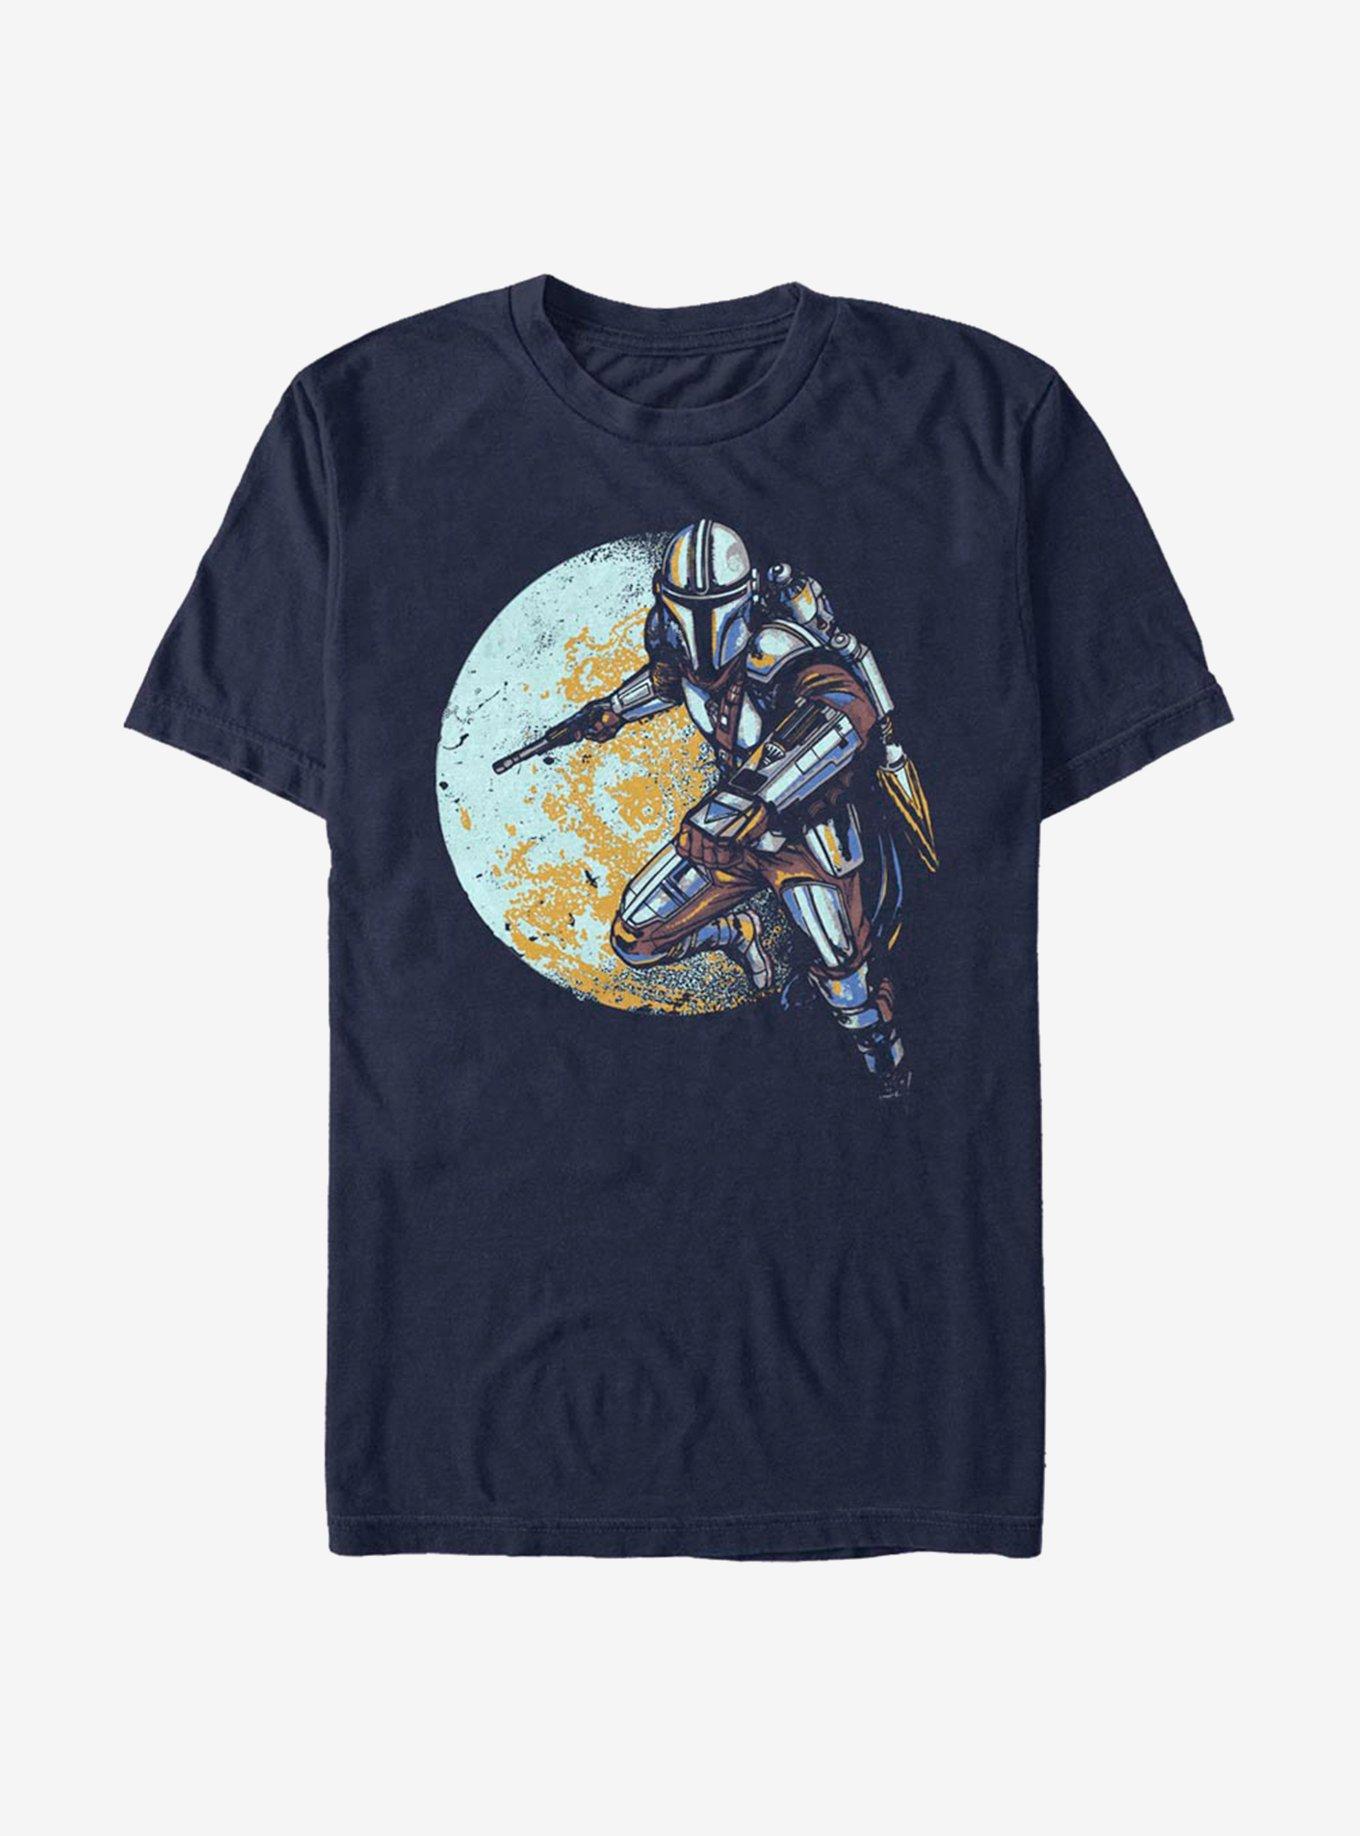 Star Wars The Mandalorian Moondo Lorian T-Shirt, NAVY, hi-res